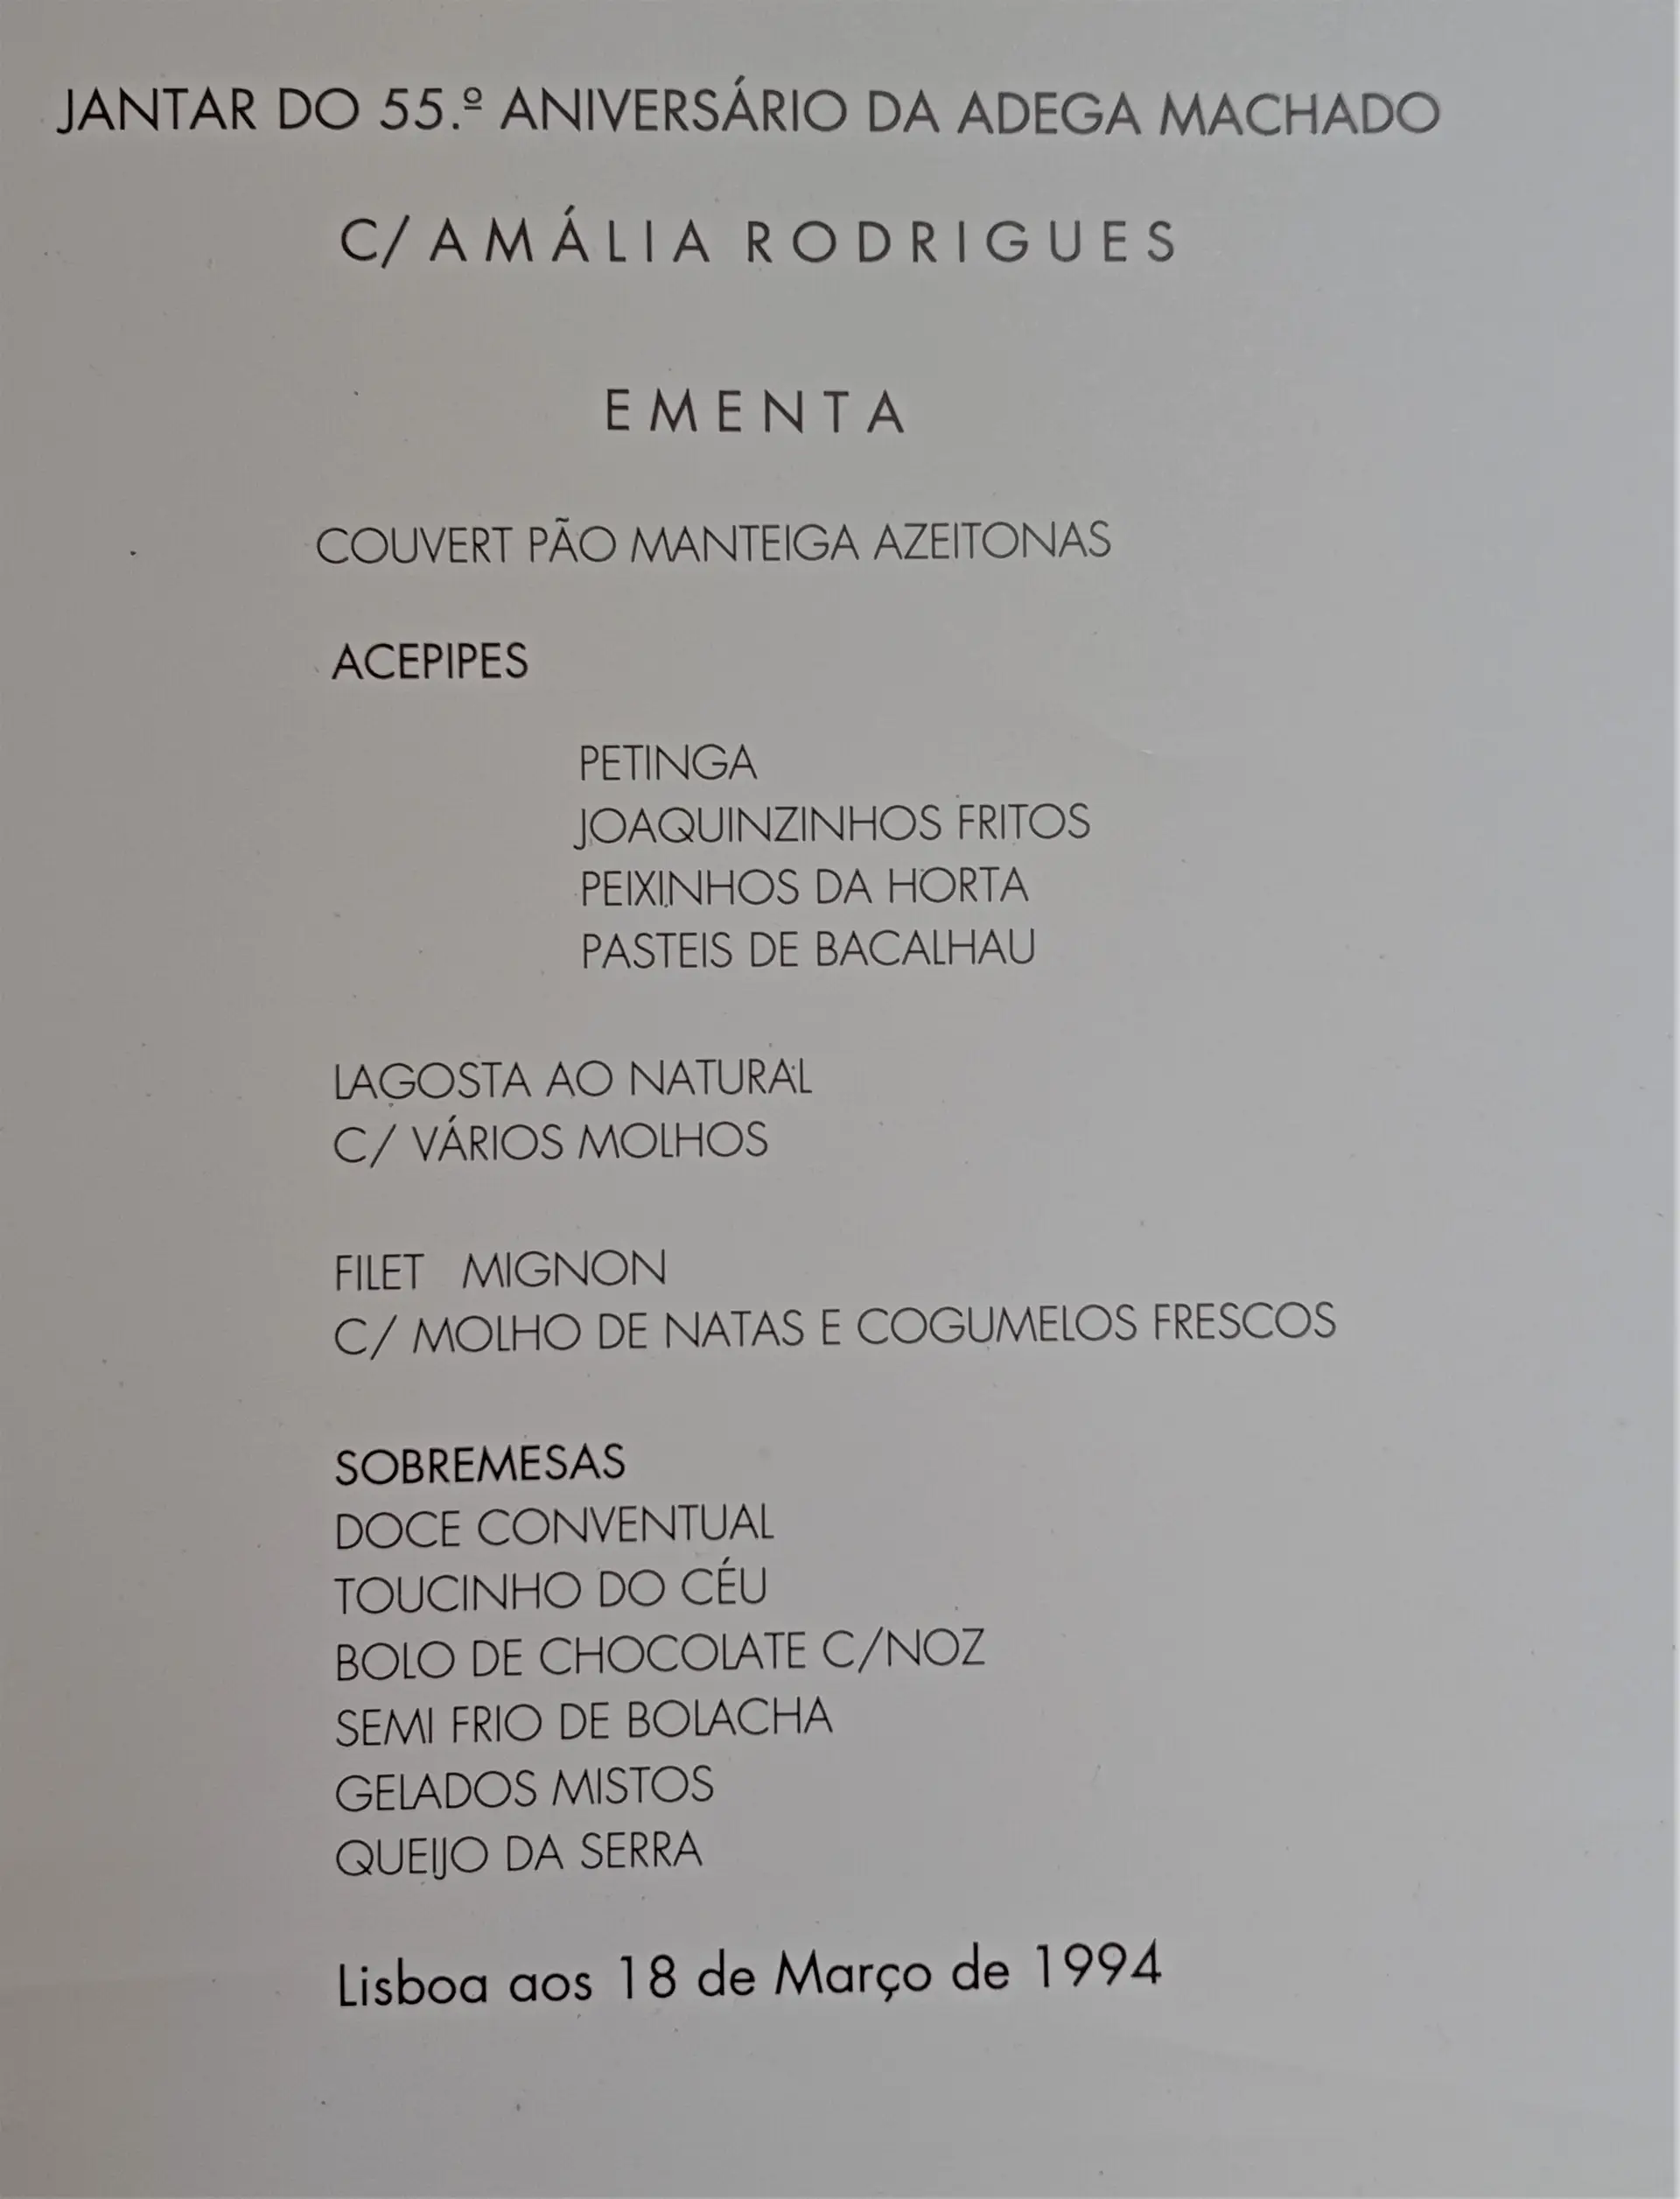 Menu do jantar do 55º aniversário da Adega Machado, com Amália Rodrigues, em 1994